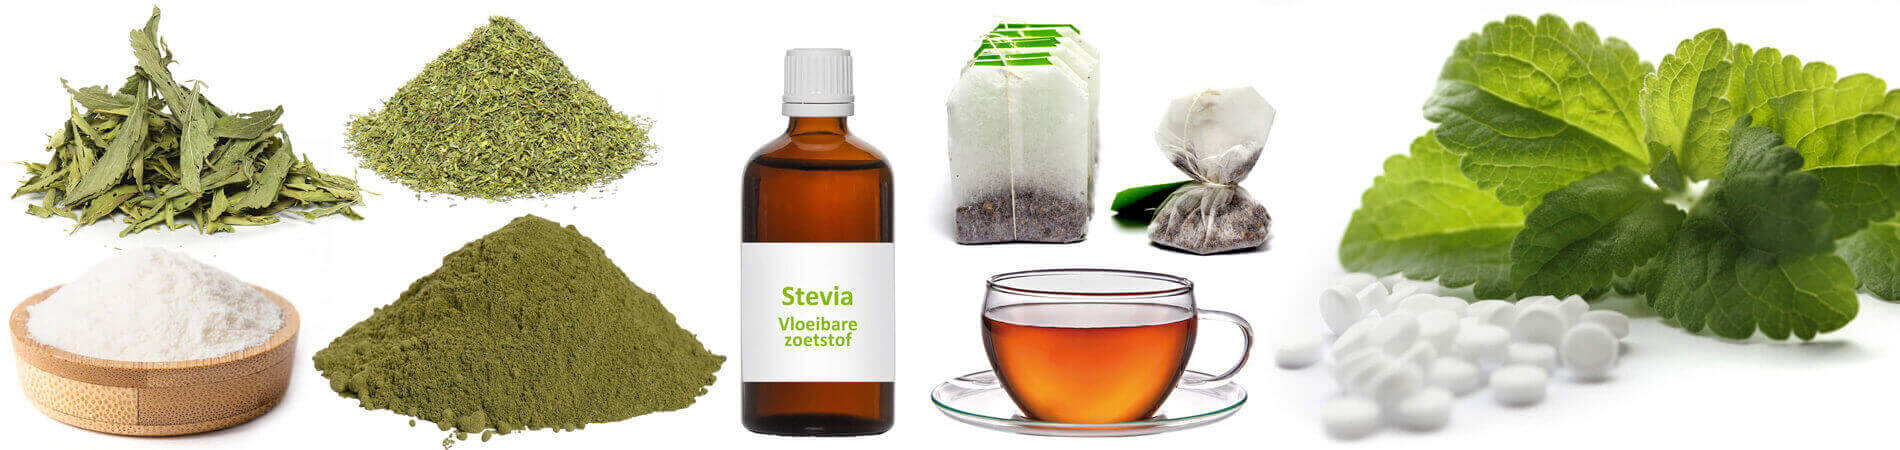 Stevia als zoetstof - Alles over de suikervervanger 